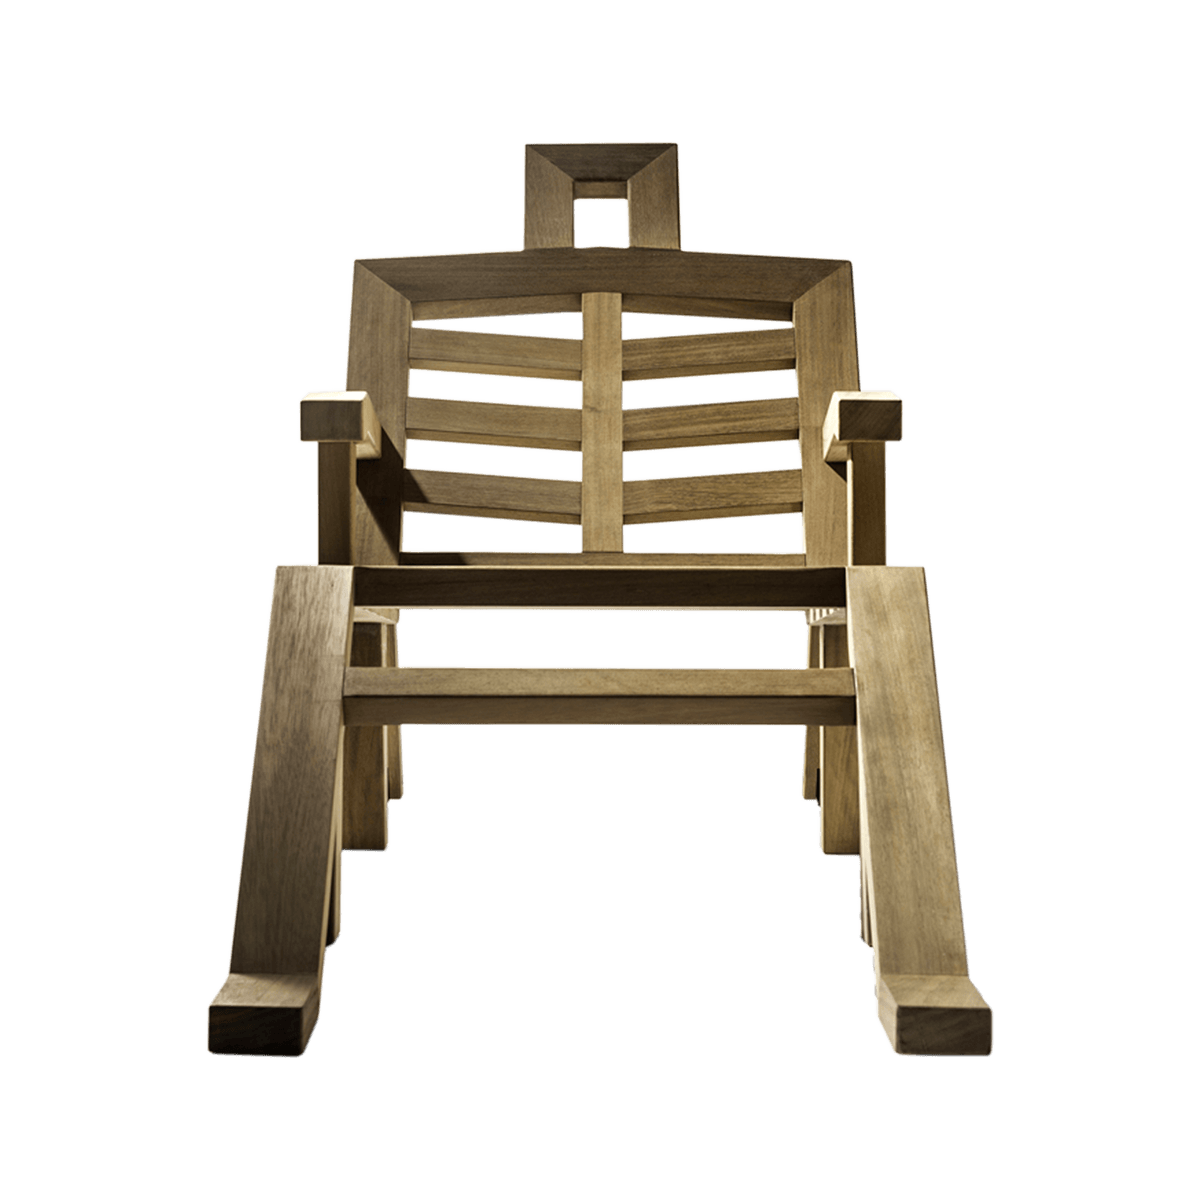 b.d barcelona design  Portlligat Sunbed 躺椅